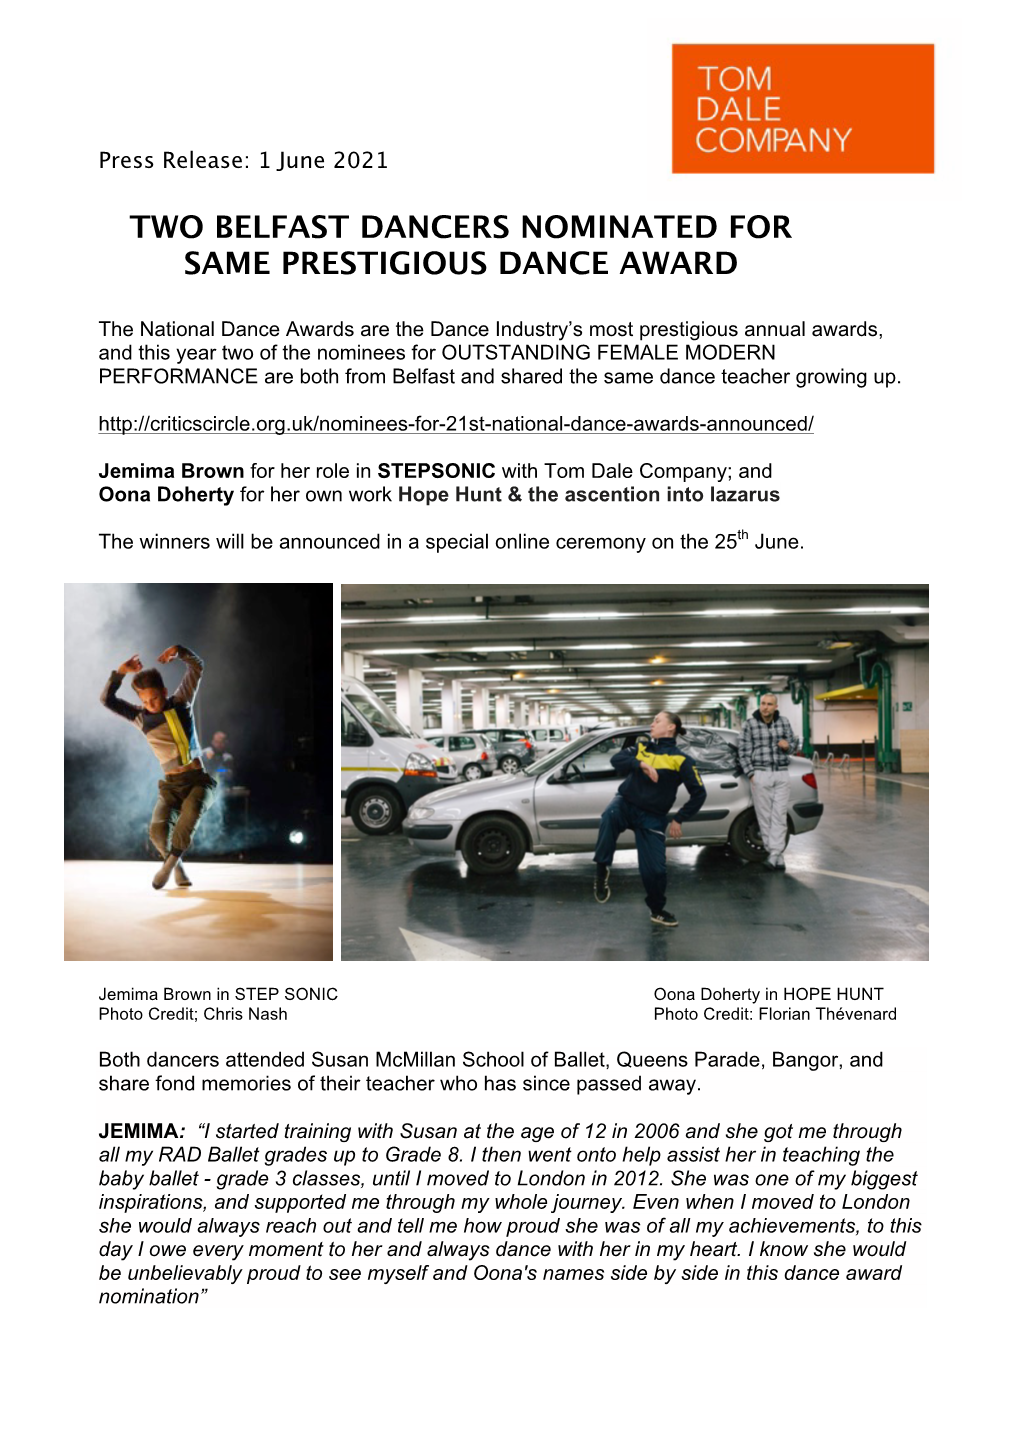 Belfast Dancers Nominated for Award PRESS RELEASE